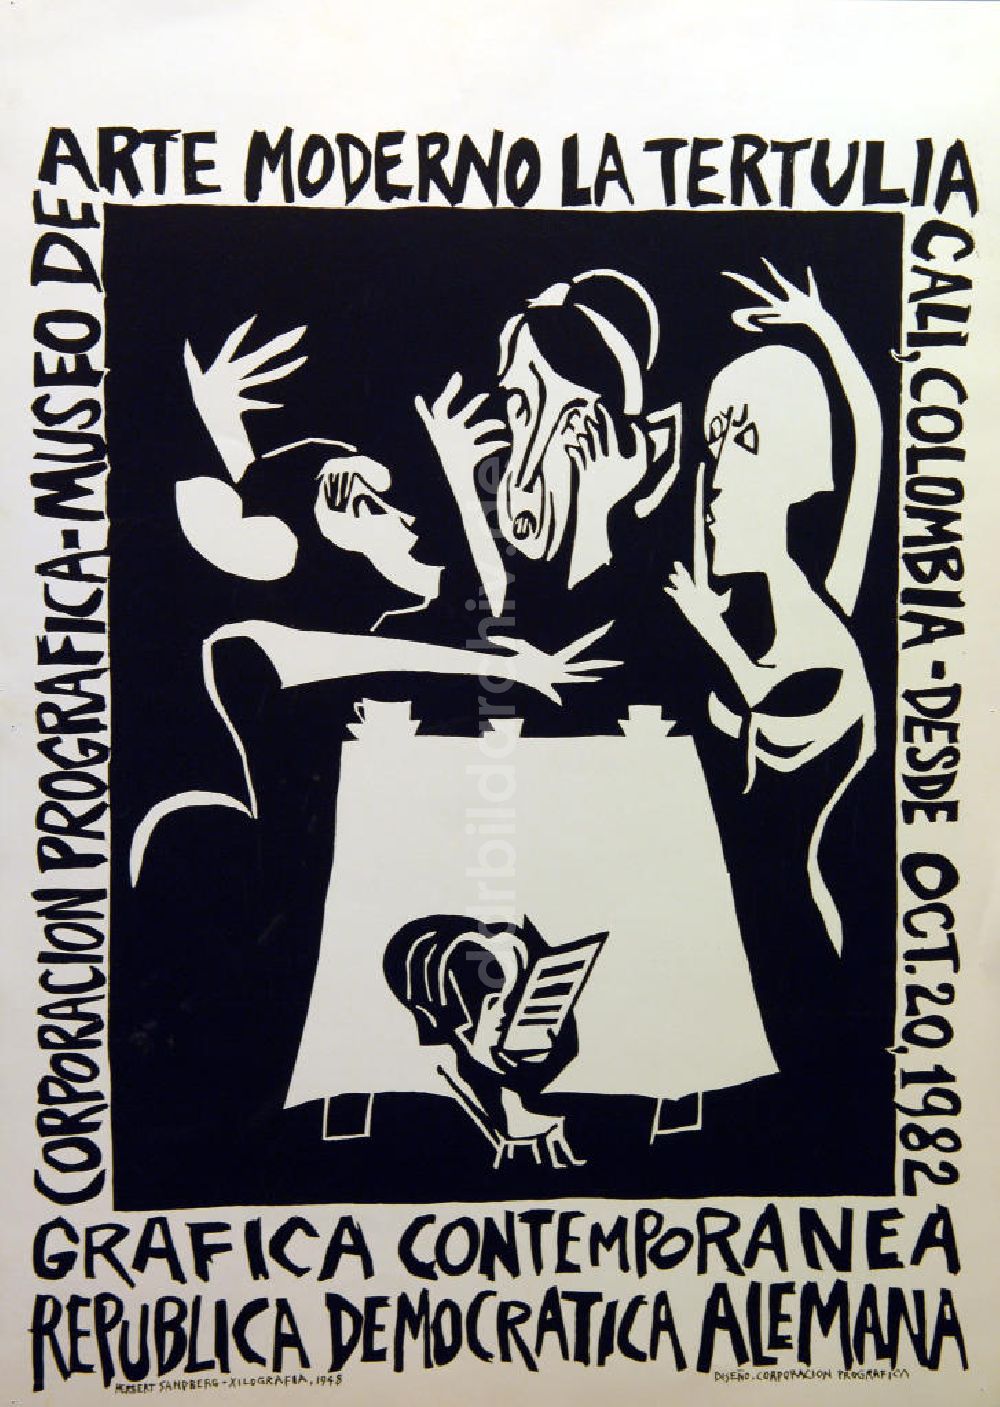 DDR-Fotoarchiv: Berlin - Plakat von der Ausstellung Grafica contemporanea, republica democratica alemana über Herbert Sandberg aus dem Jahr 1982